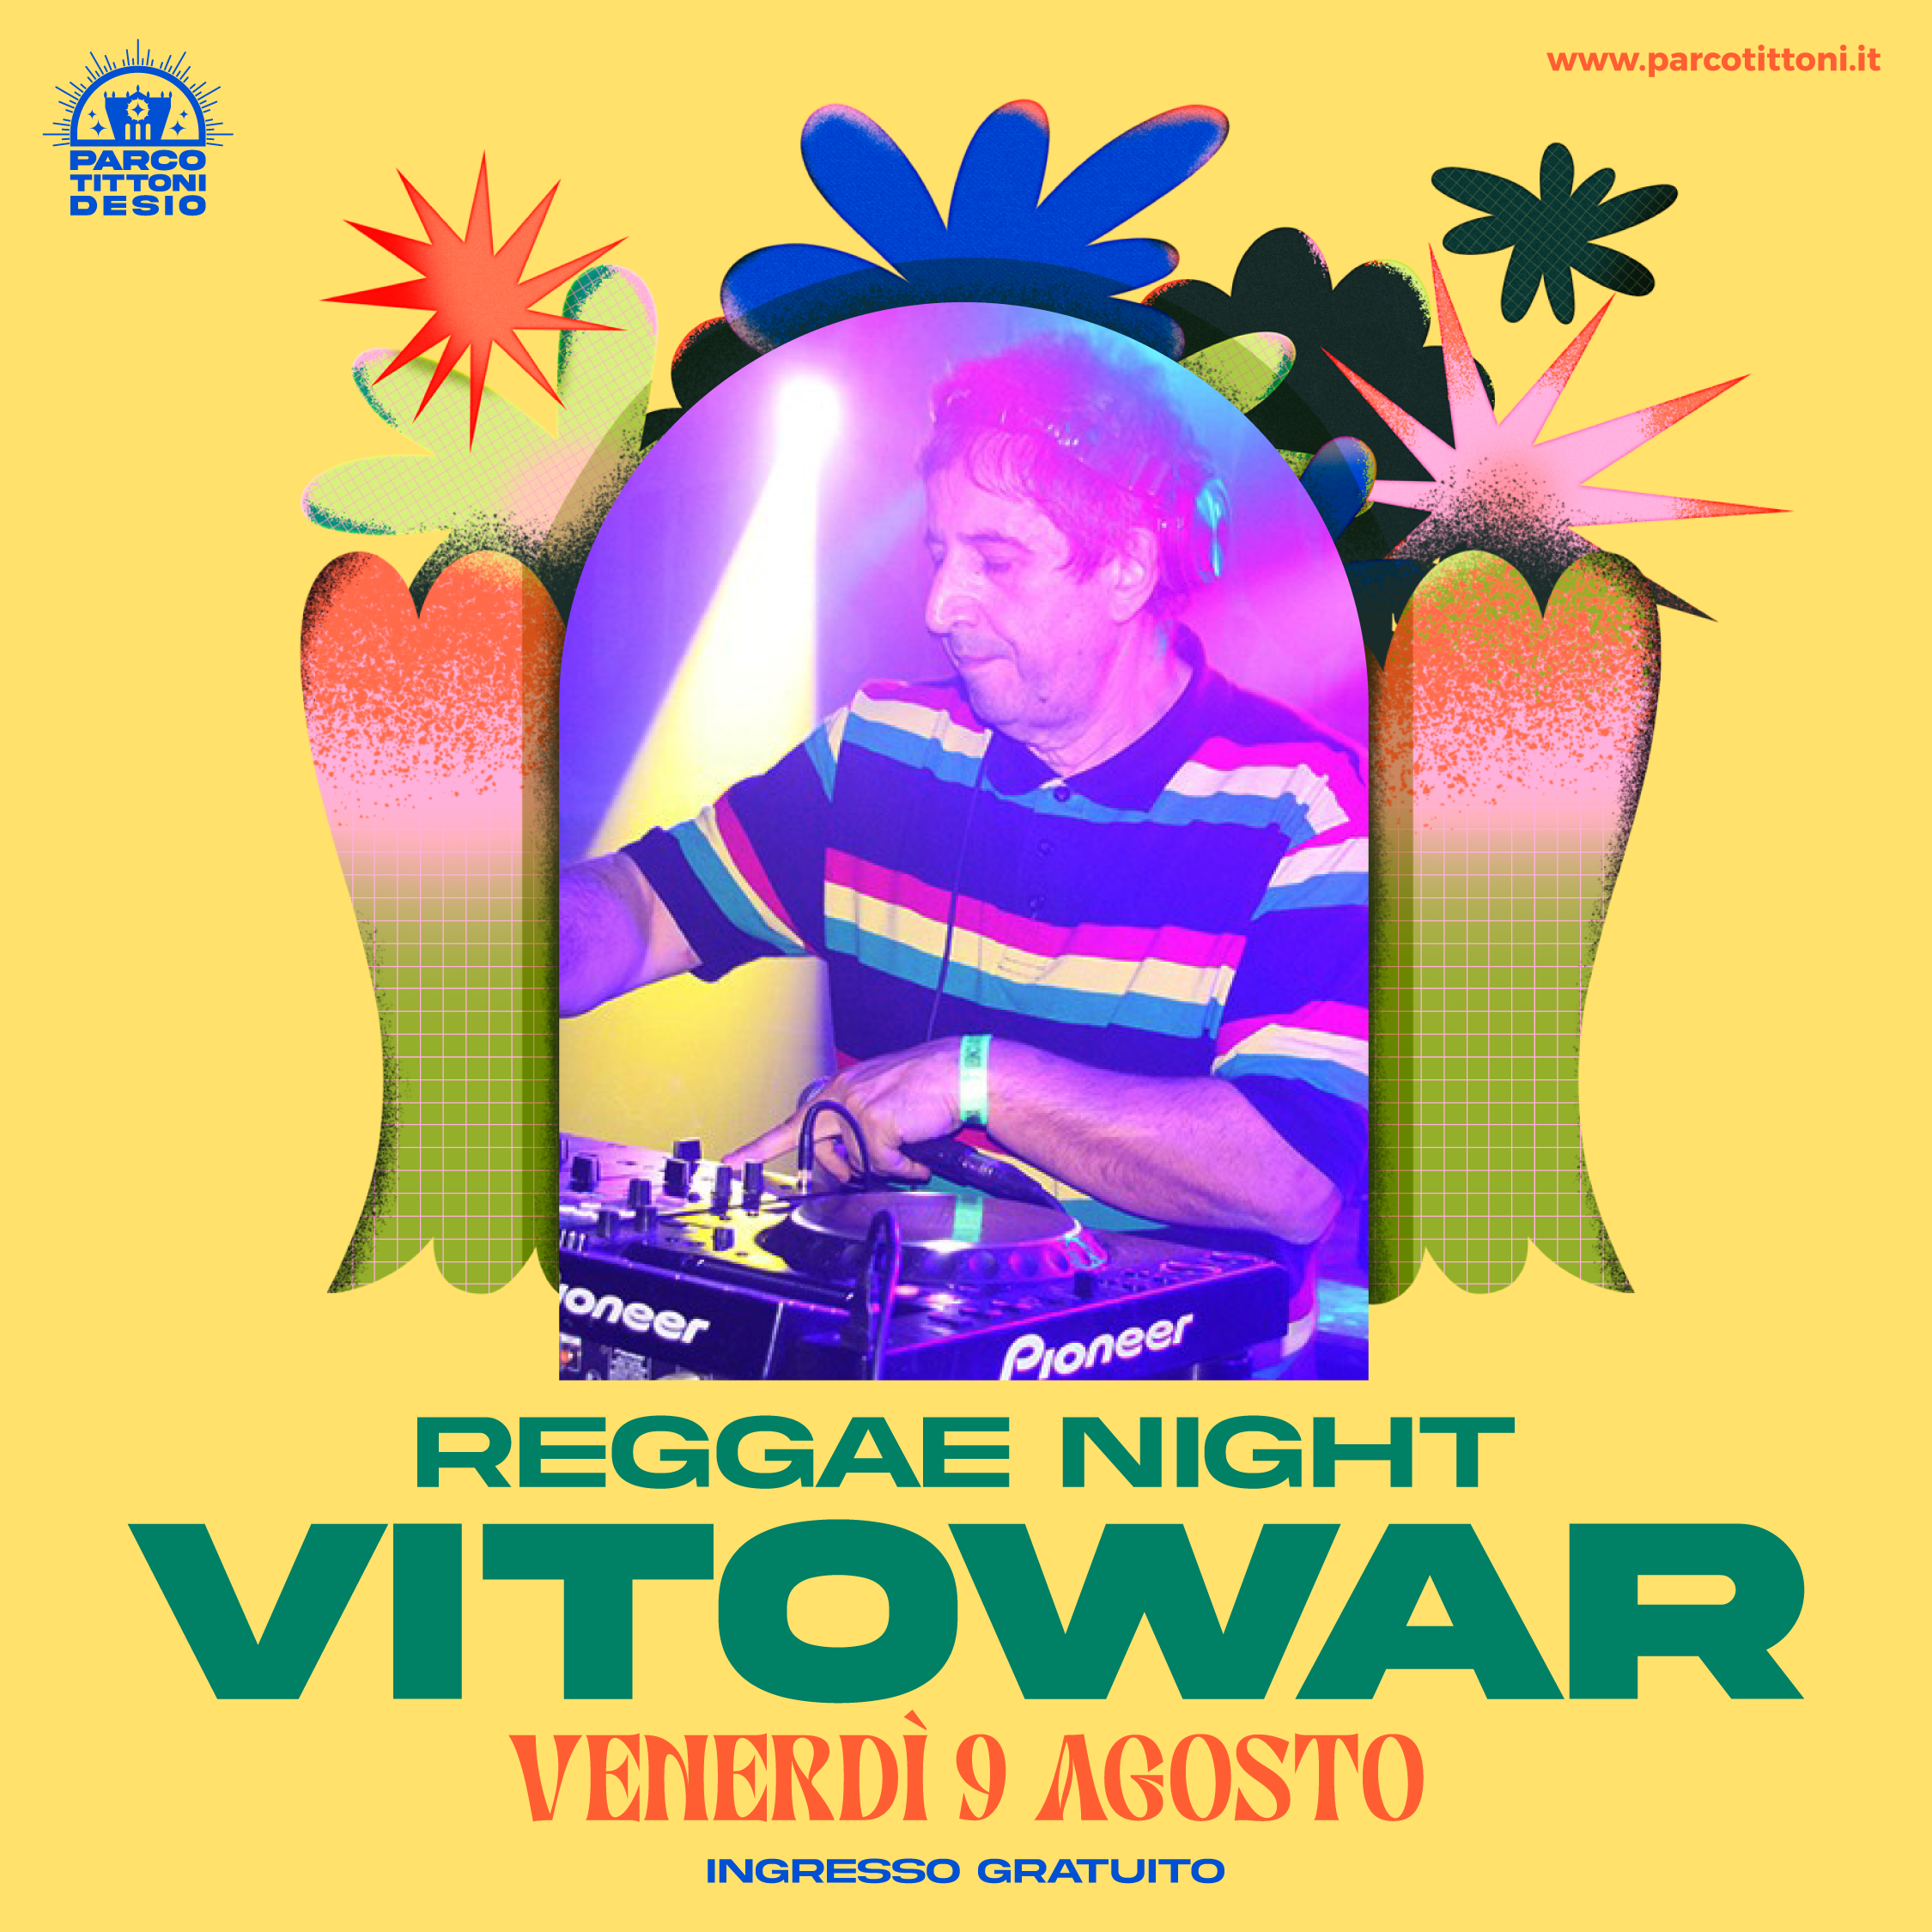 VitoWar selezionerà vibrazioni reggae per portare una serata di Jamaica nell'afosa Brianza!